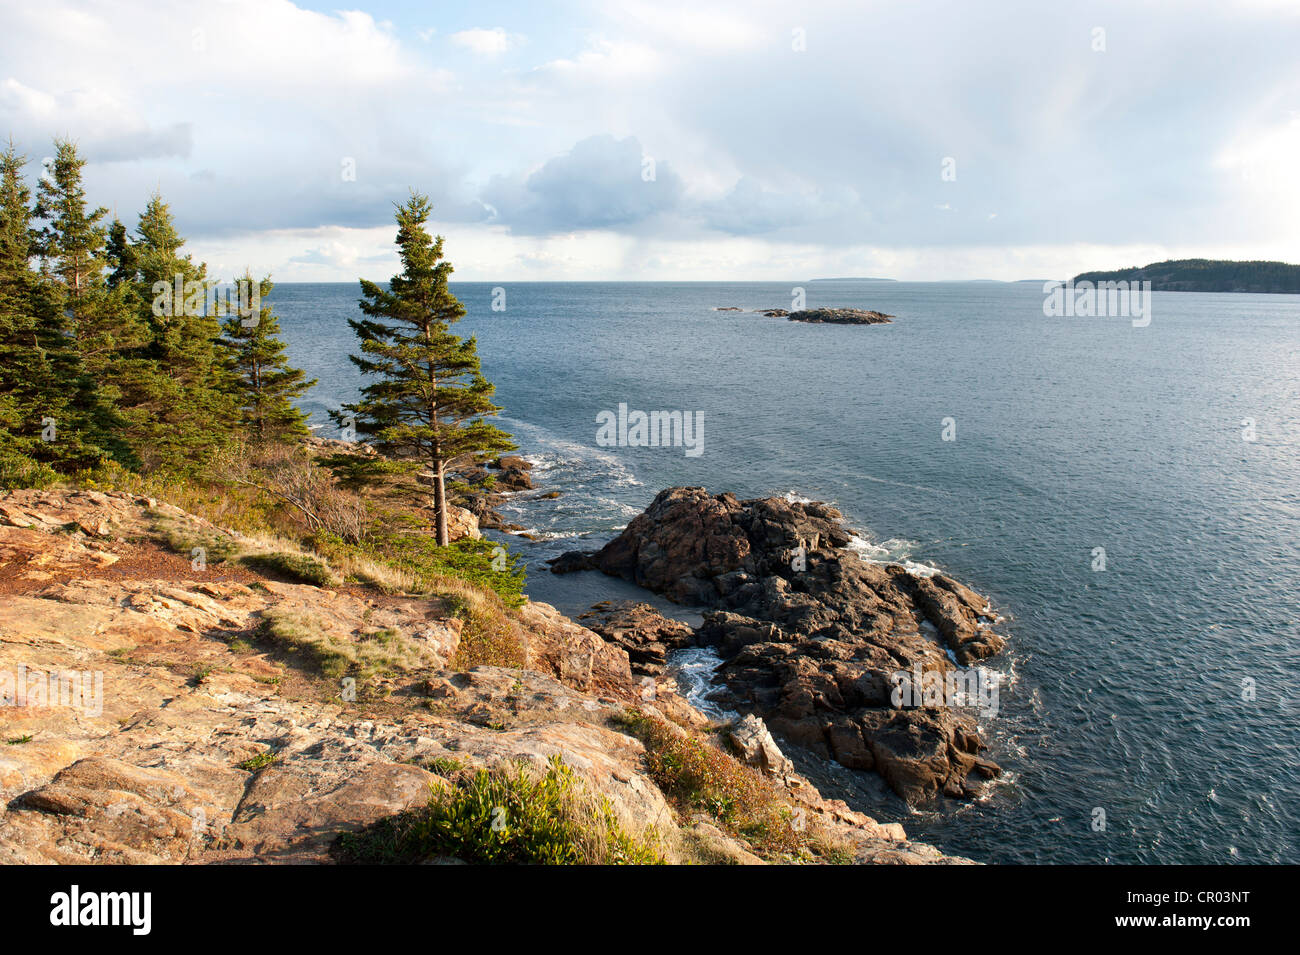 Les conifères sur une côte rocheuse, grand chef, l'Acadia National Park, Maine, New England, USA, Amérique du Nord Banque D'Images